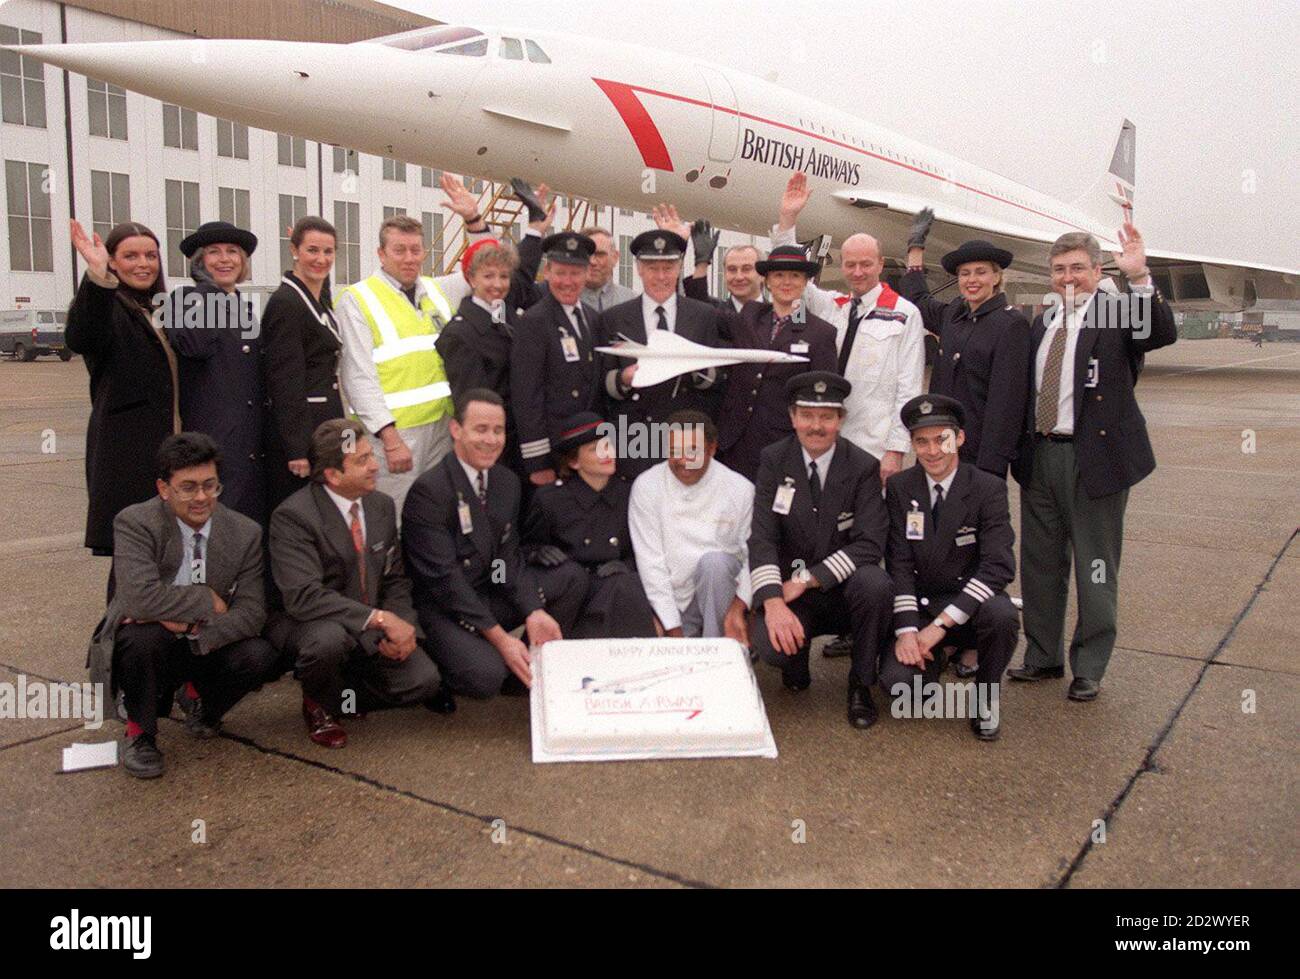 Vingt membres du personnel de Concorde, du pilote au nettoyeur, célèbrent aujourd'hui le vingtième anniversaire du premier vol commercial des célèbres avions à Londres Heathrow (vendredi). Depuis ce premier vol vers Bahreïn, Concorde a effectué l'équivalent de plus de 200 vols aller-retour vers la Lune. Banque D'Images